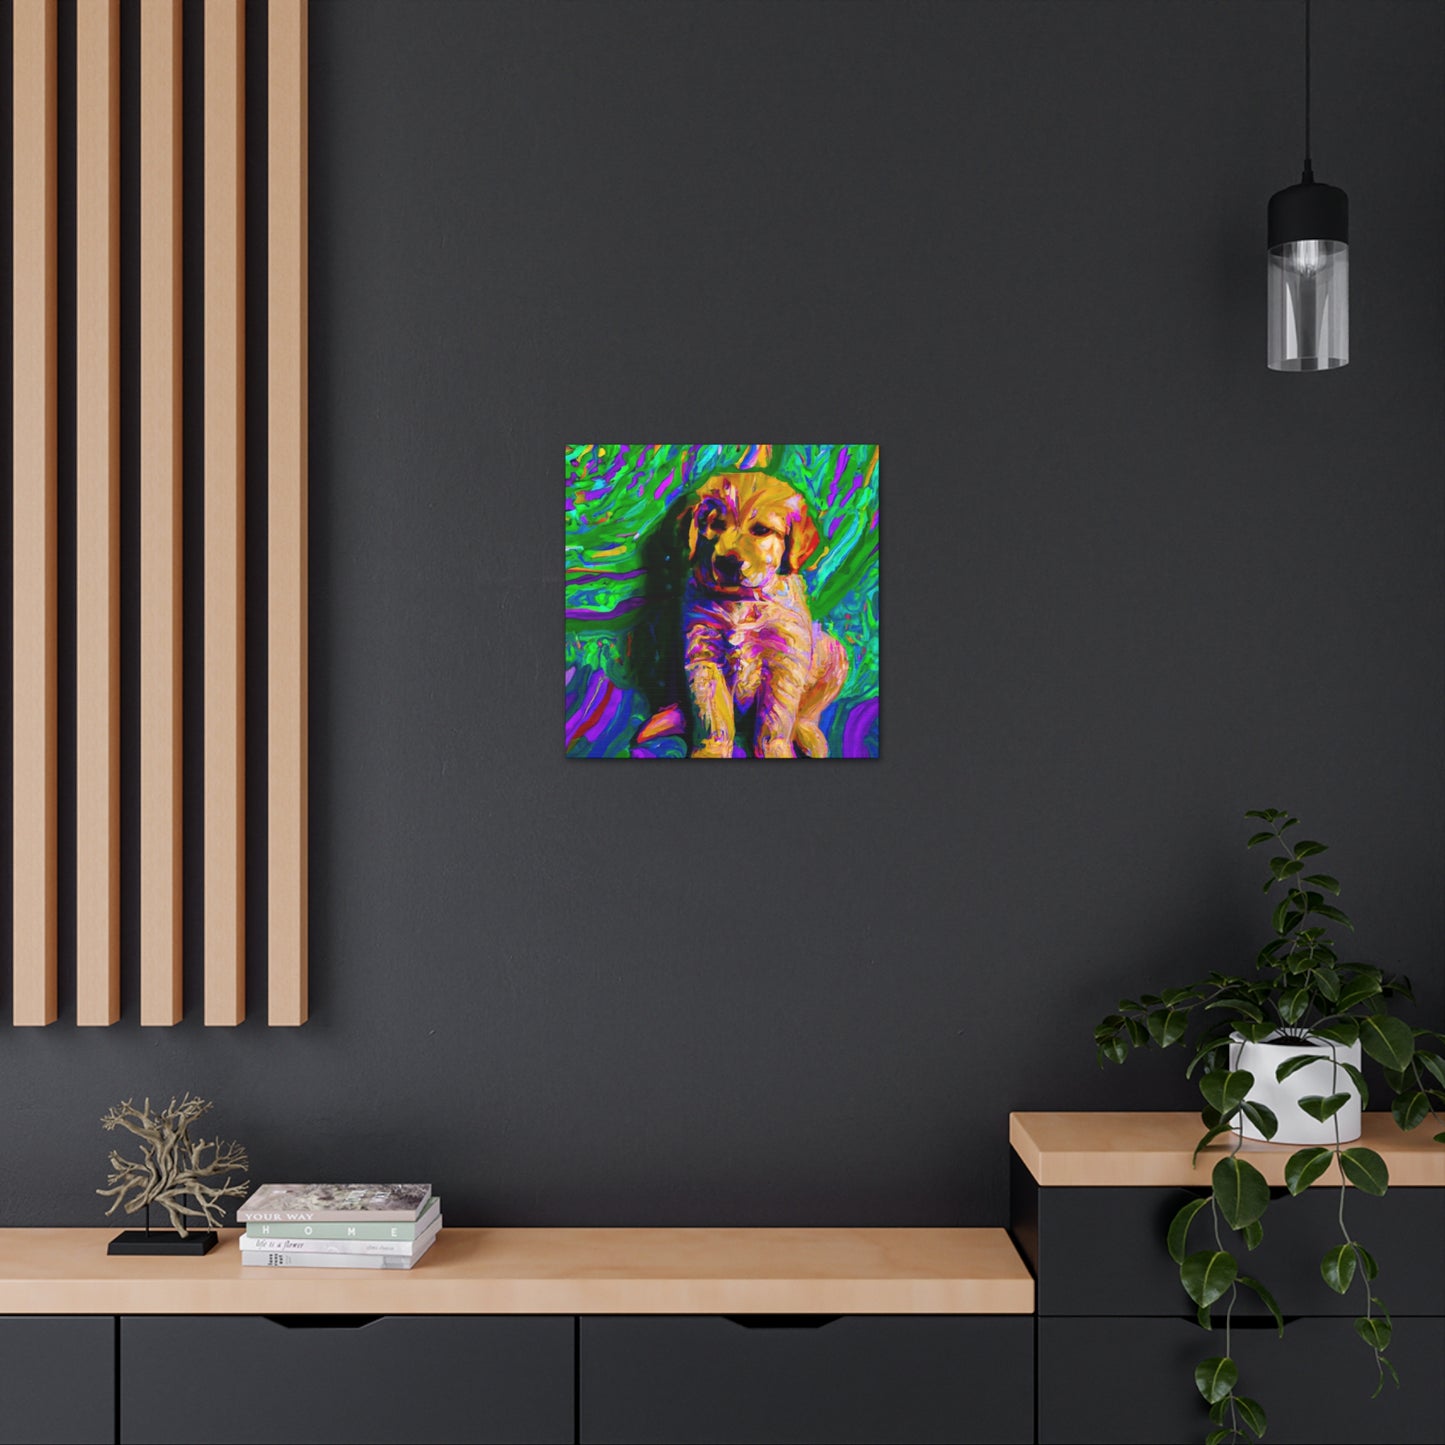 Kingston Remei de Becque - Golden Retriever Puppy - Canvas